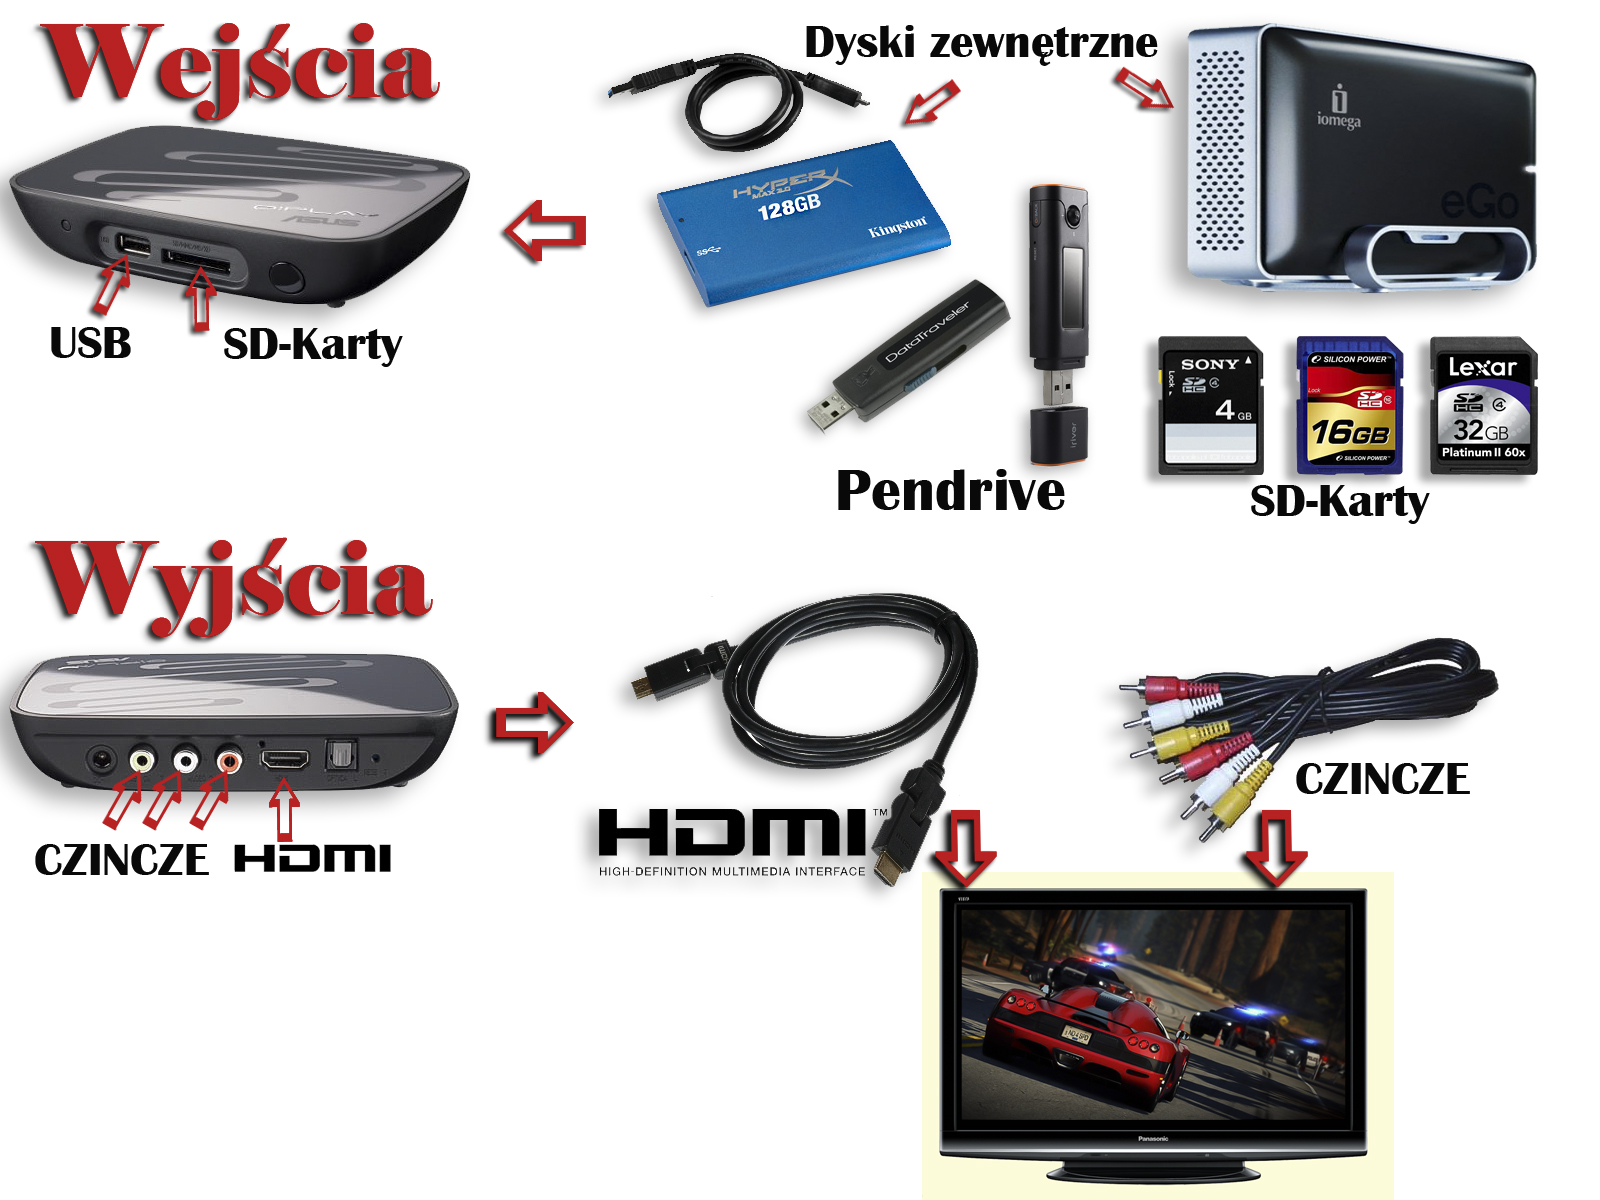  Filmy HD i Full HD - Nowości z lektorem PL - Urządzenie MiniPlayer - Pomóż sobie i innym .jpg